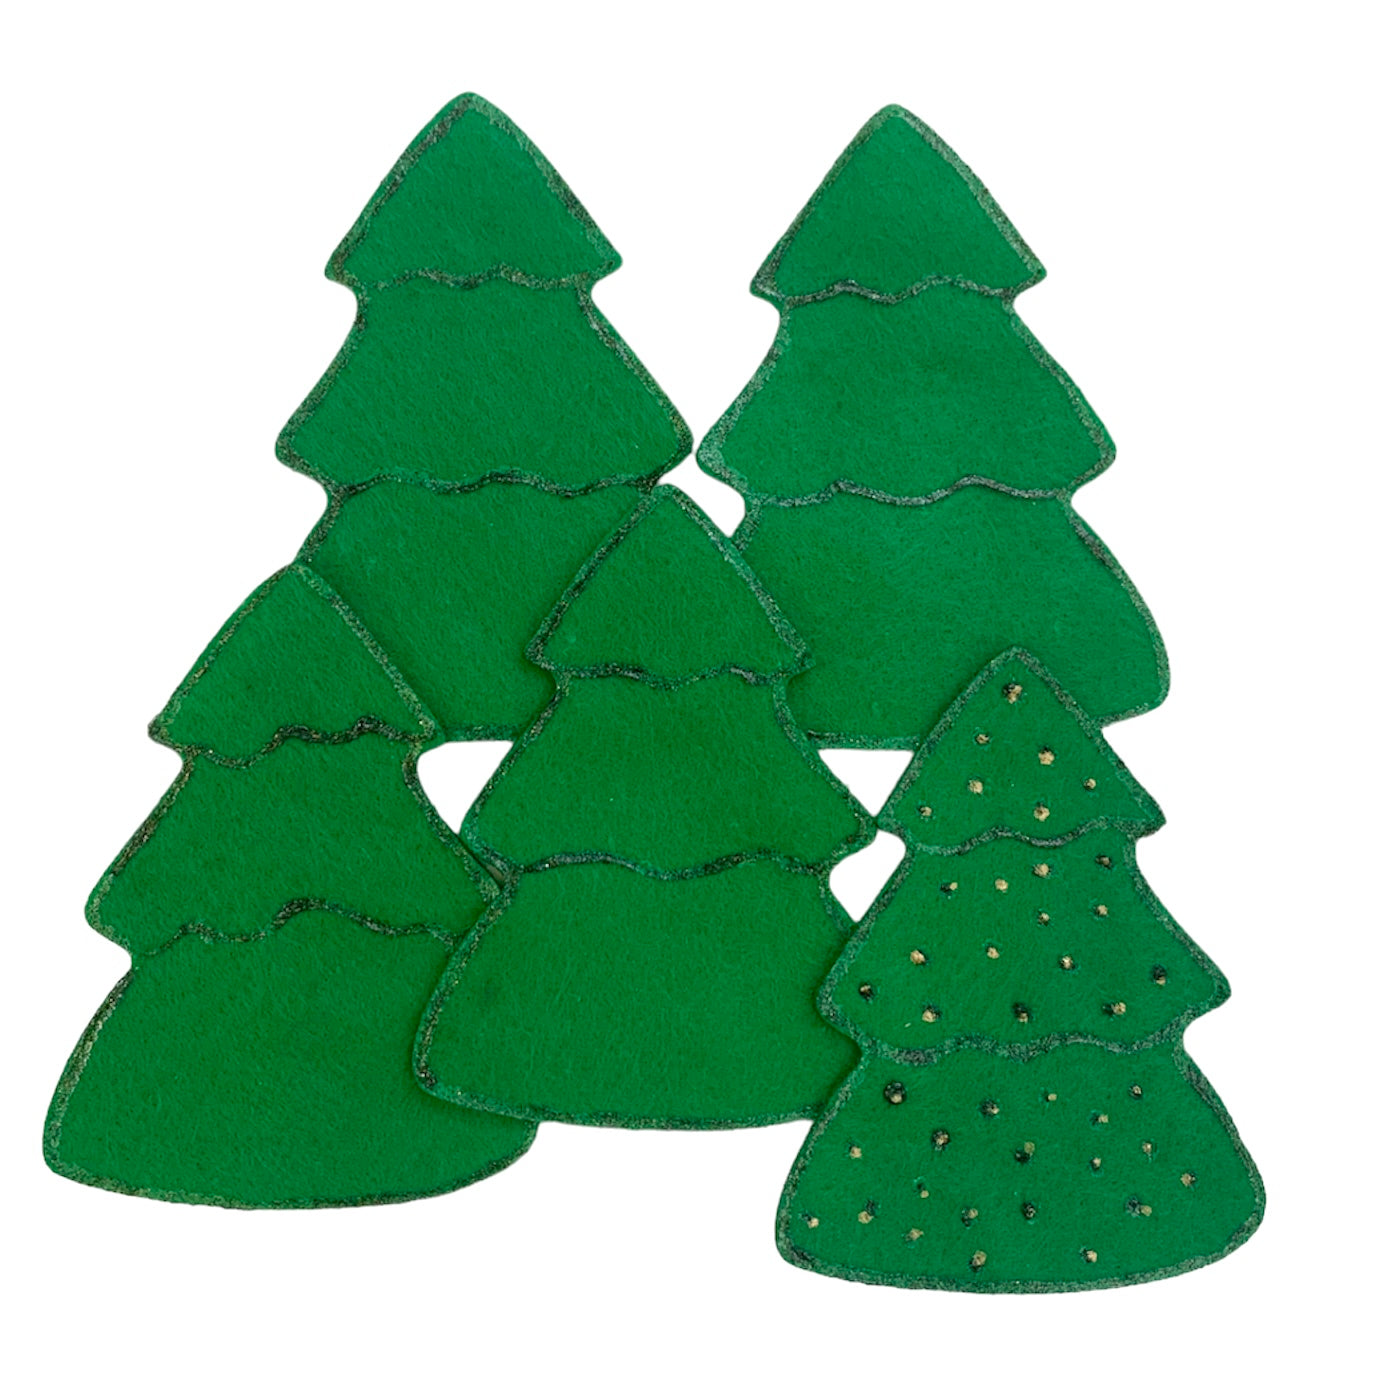 Five Christmas Trees